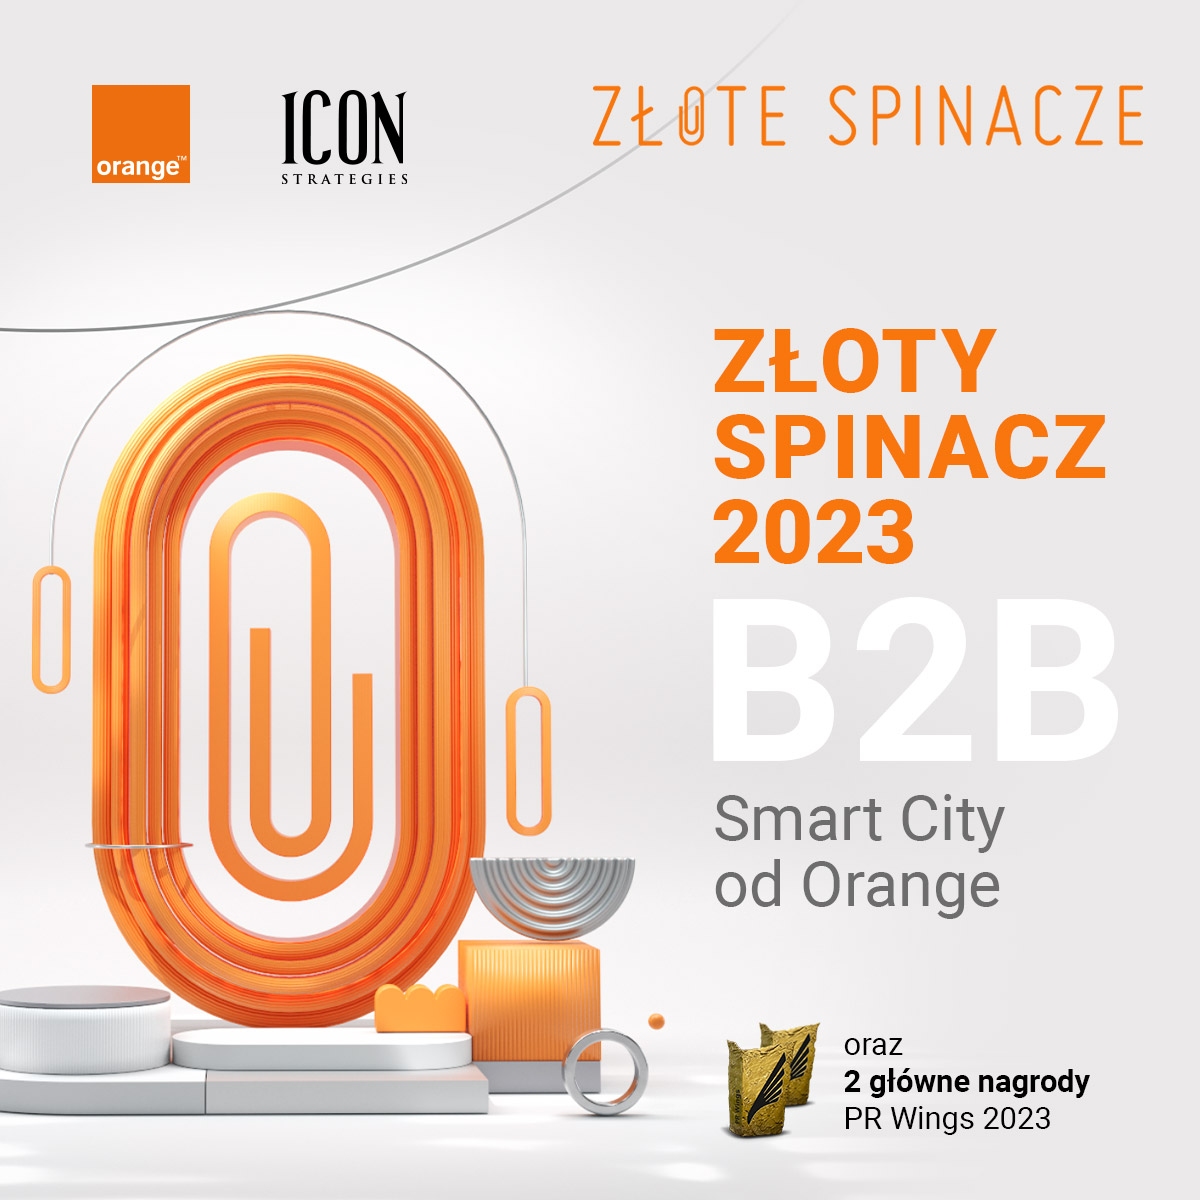 Złoty Spinacz 2023 #b2b @Orange_Polska + @Icon_Strategies #ZFPR #zlotespinacze2023 #smartcity